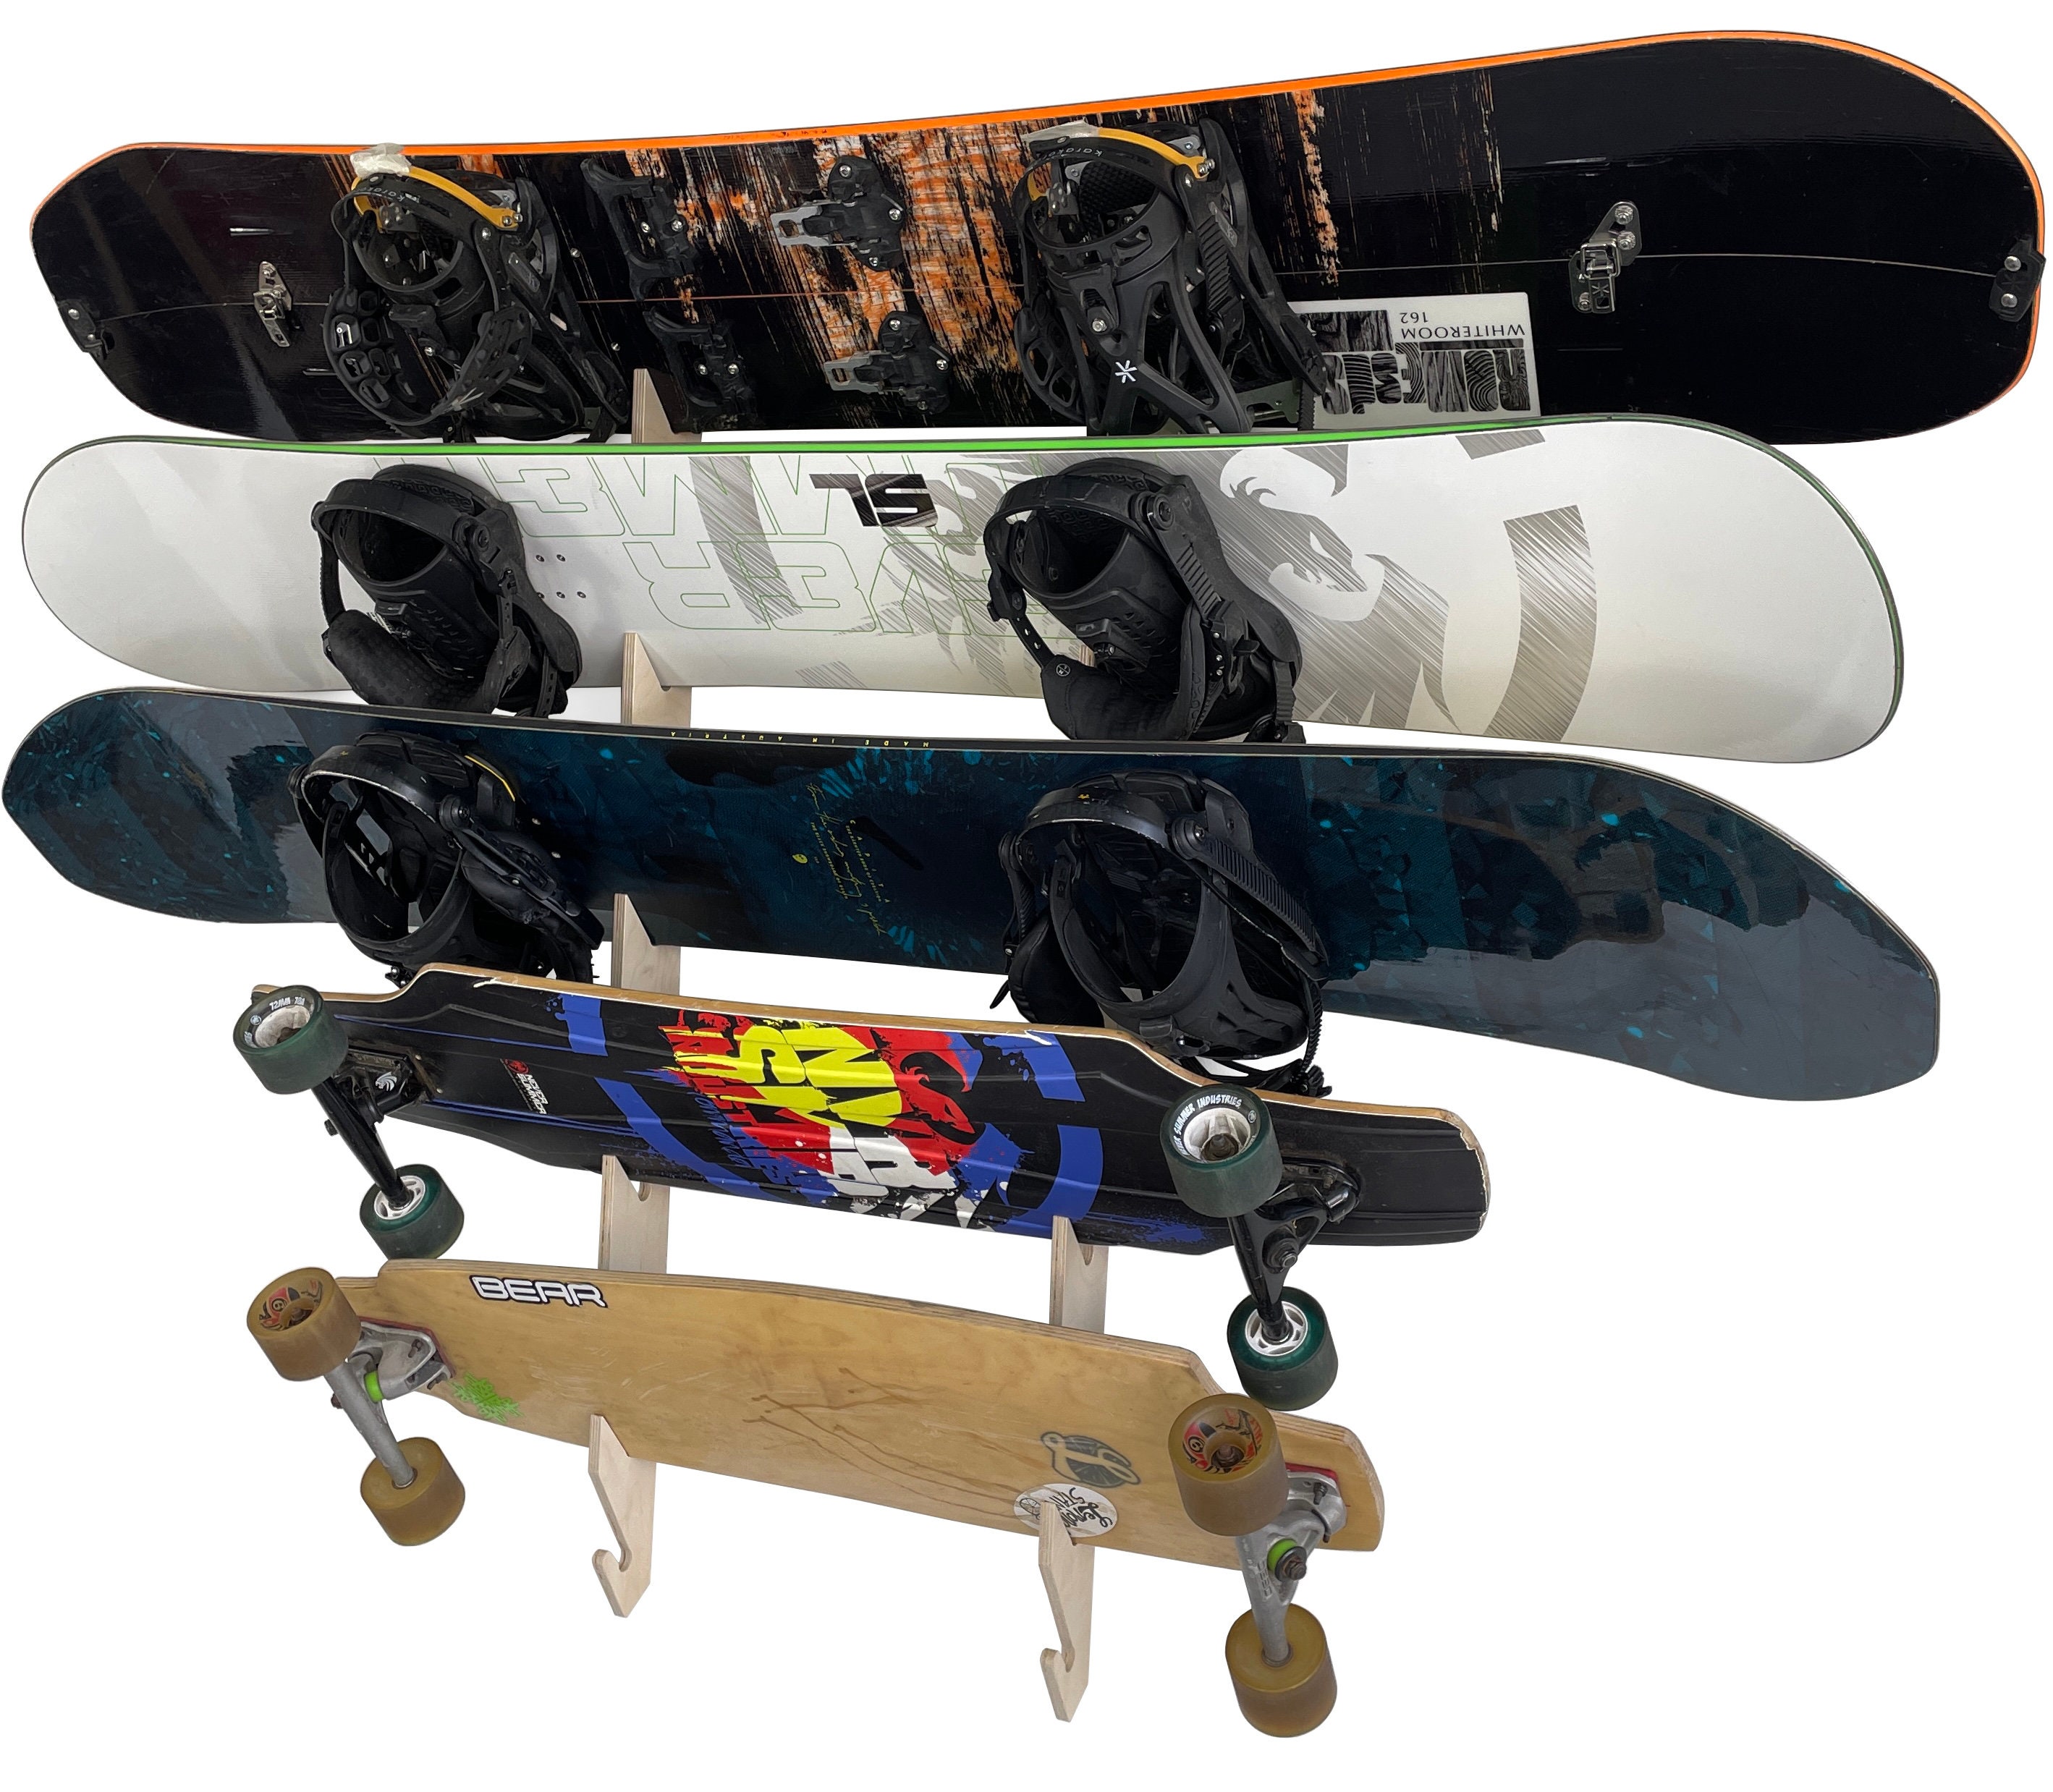 Skateboard Longboard ADJUSTABLE Wall Mount Hanger Deck Display Vintage NOS qty 1 